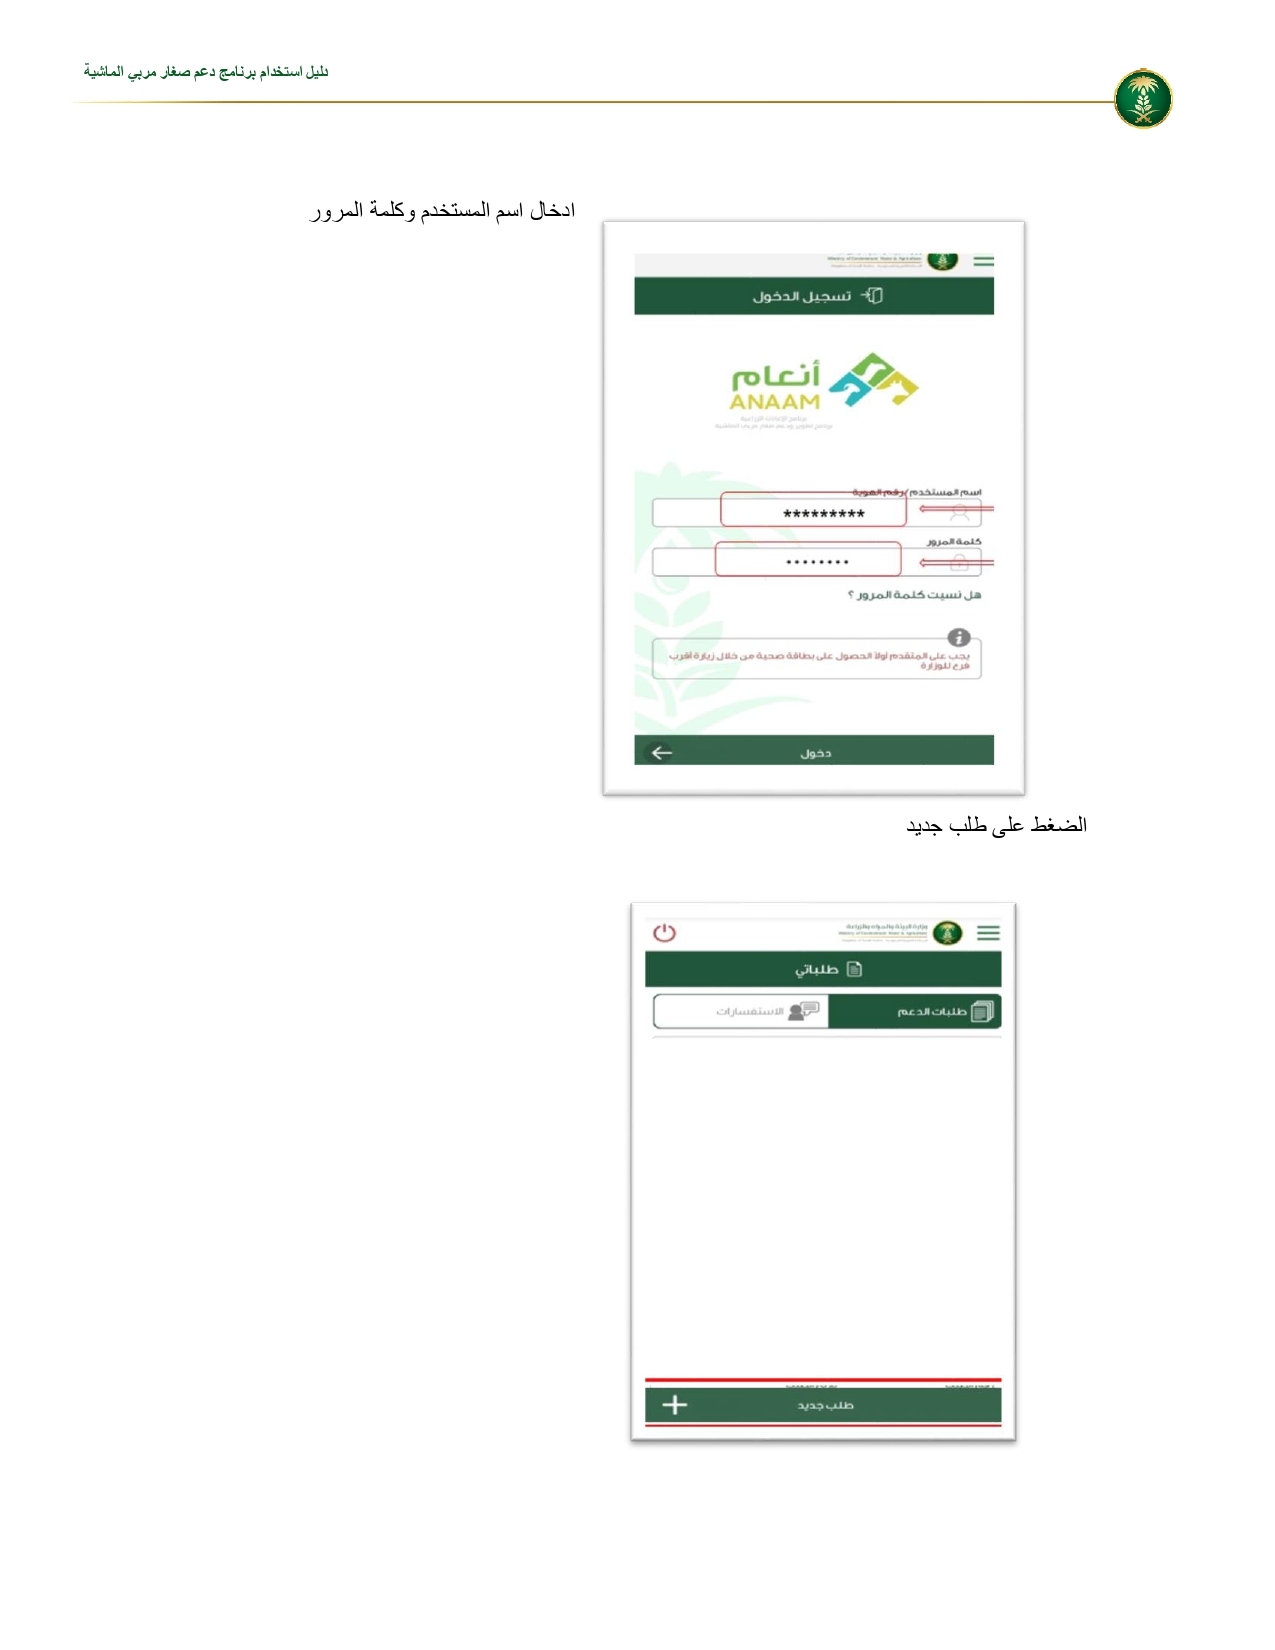 تسجيل دعم المواشي السعودية Mewa Gov Sa عبر وزارة البيئة والمياه الزراعية